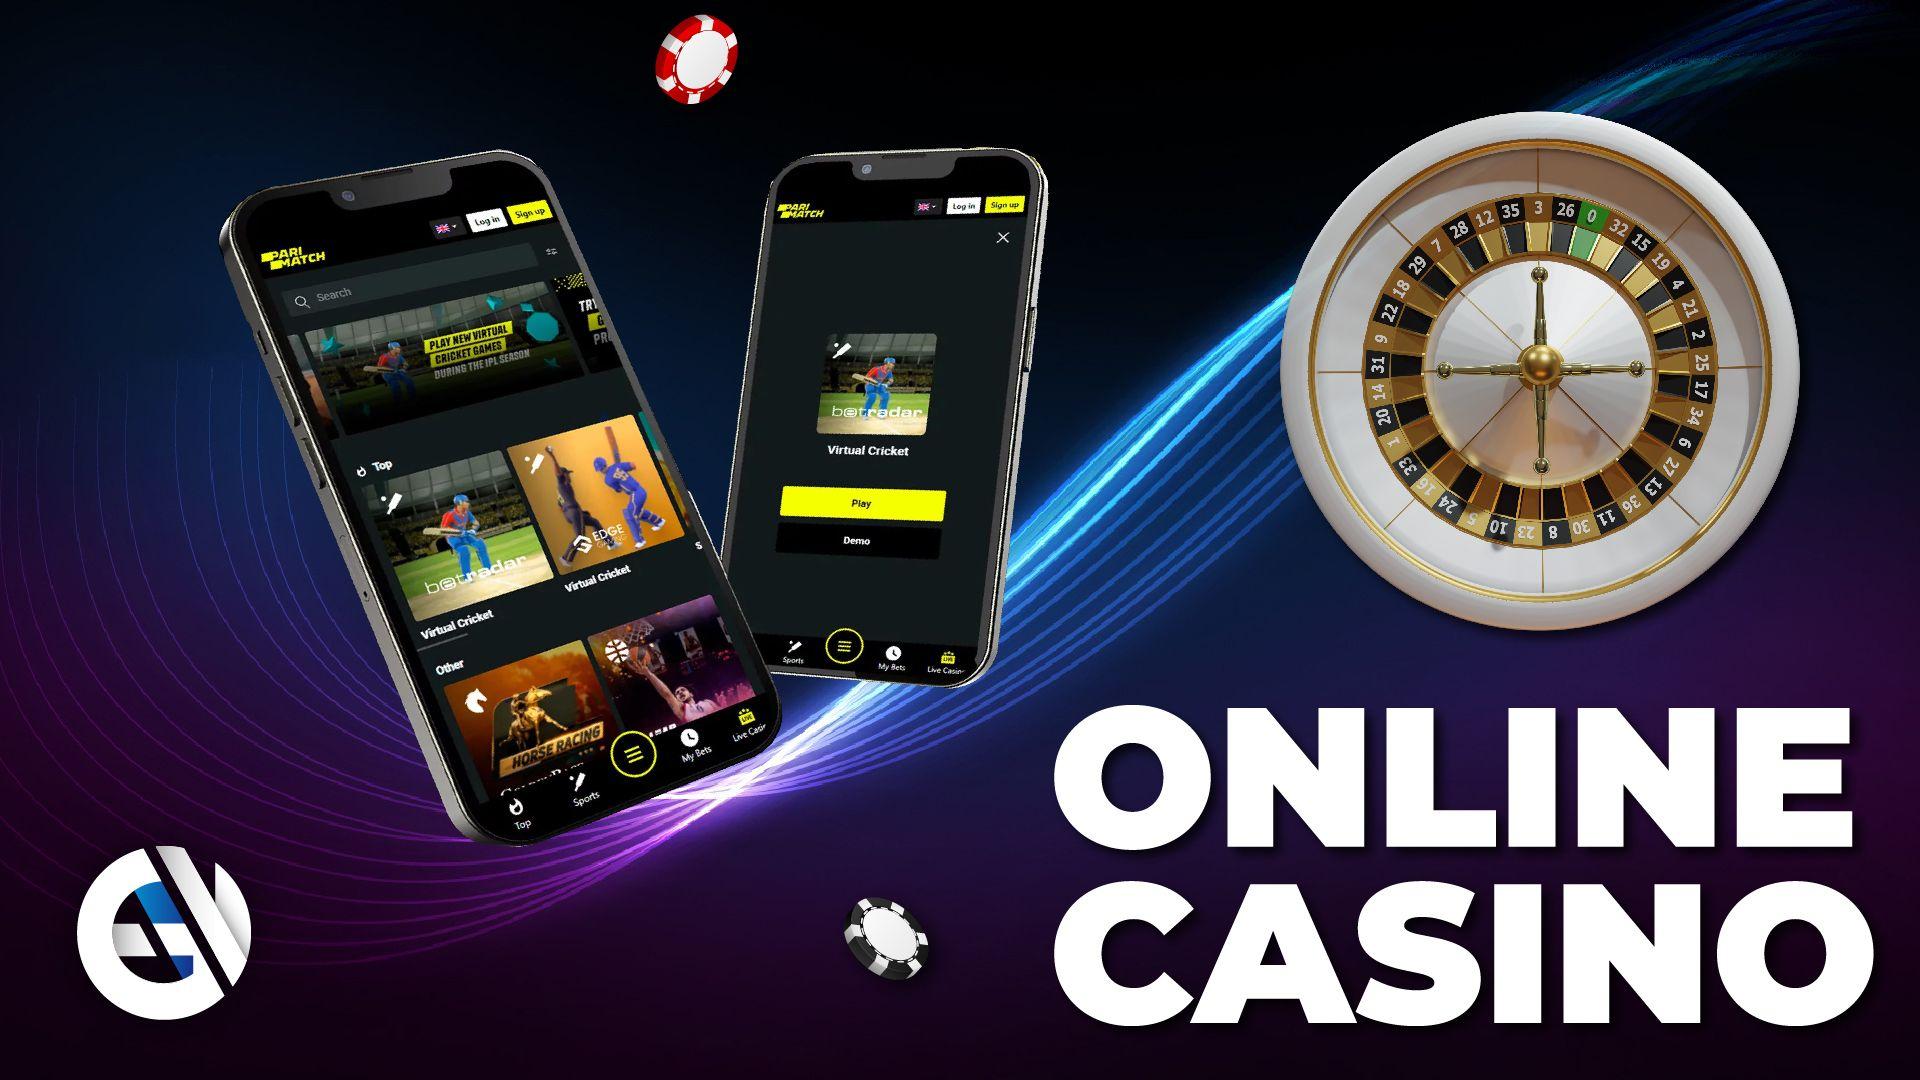 Vorteile der Anmeldung im Parimatch Online-Casino über die App und die Vorteile einer korrekten Registrierung